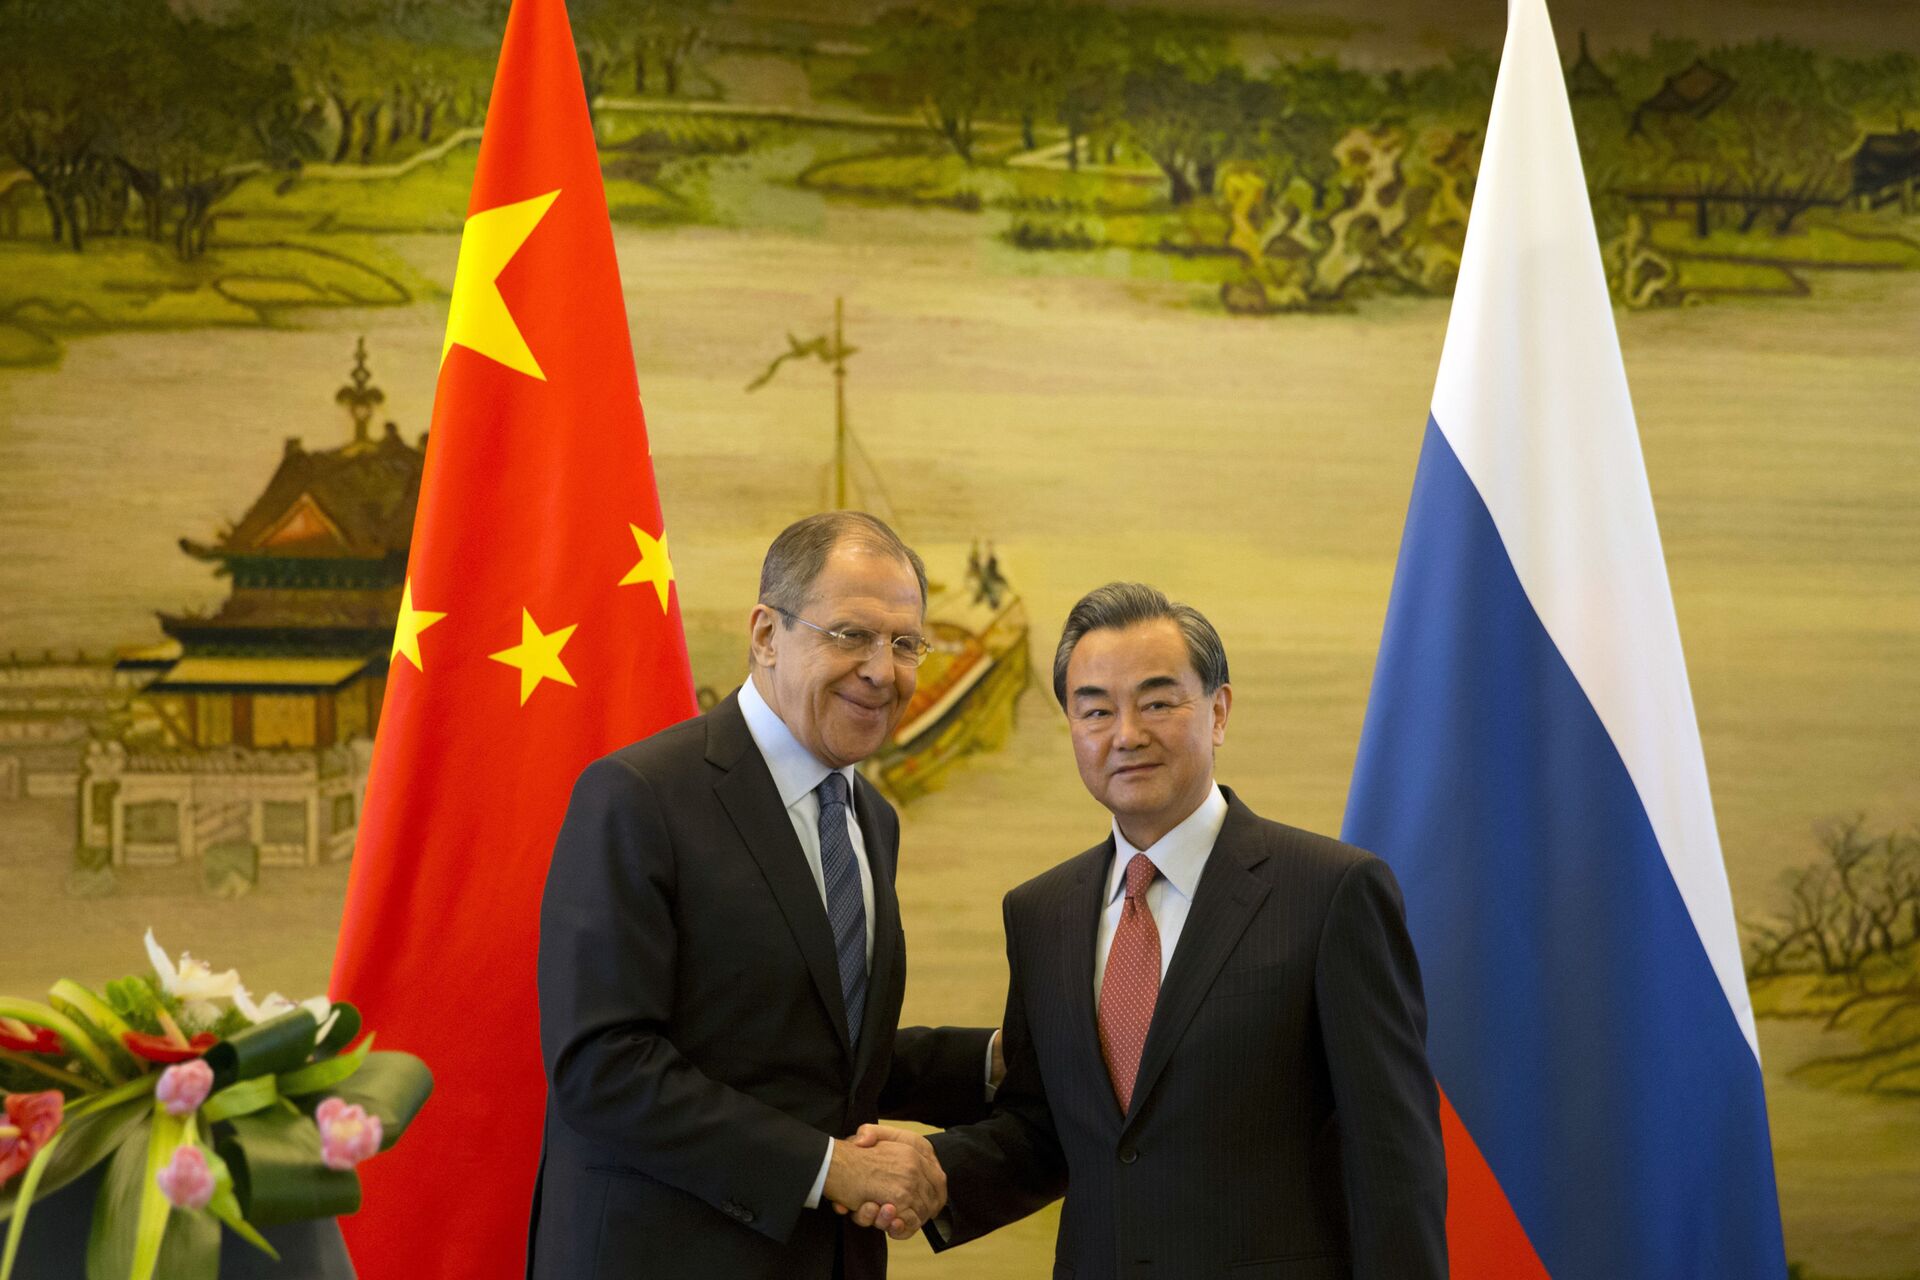 Ngoại trưởng Sergei Lavrov: Chẳng bao lâu nữa sẽ biết danh sách các quốc gia không thân thiện với Nga  - Sputnik Việt Nam, 1920, 28.04.2021